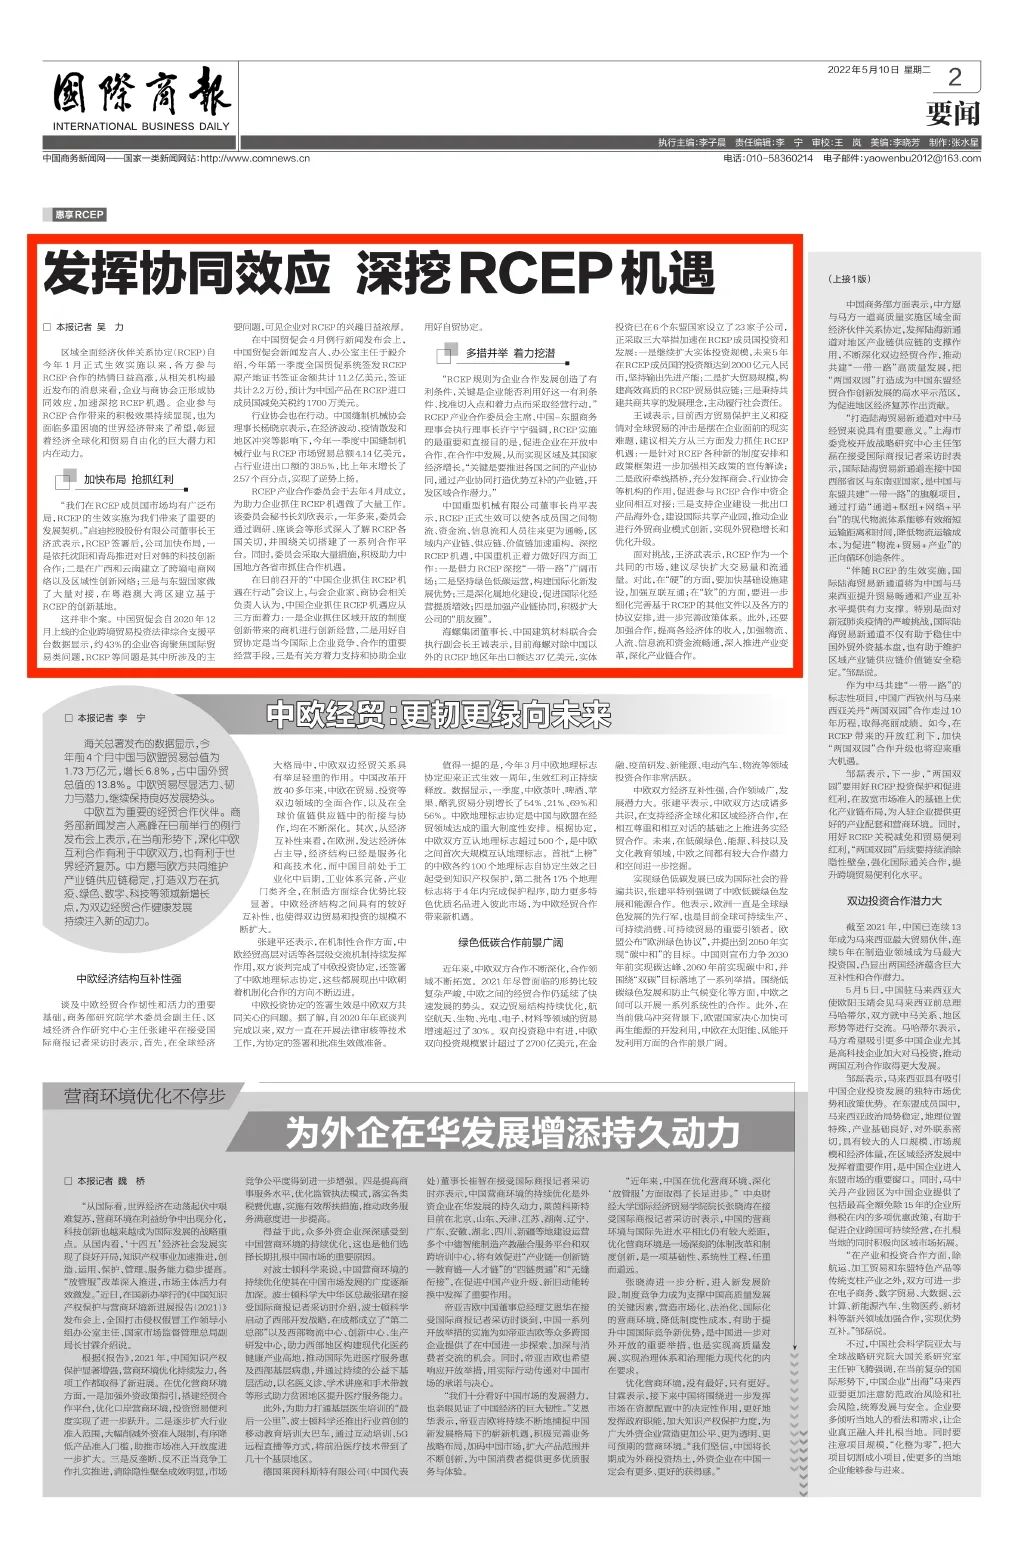 商务部《国际商报》聚焦RCEP 启迪发挥协同效应加快产业合作